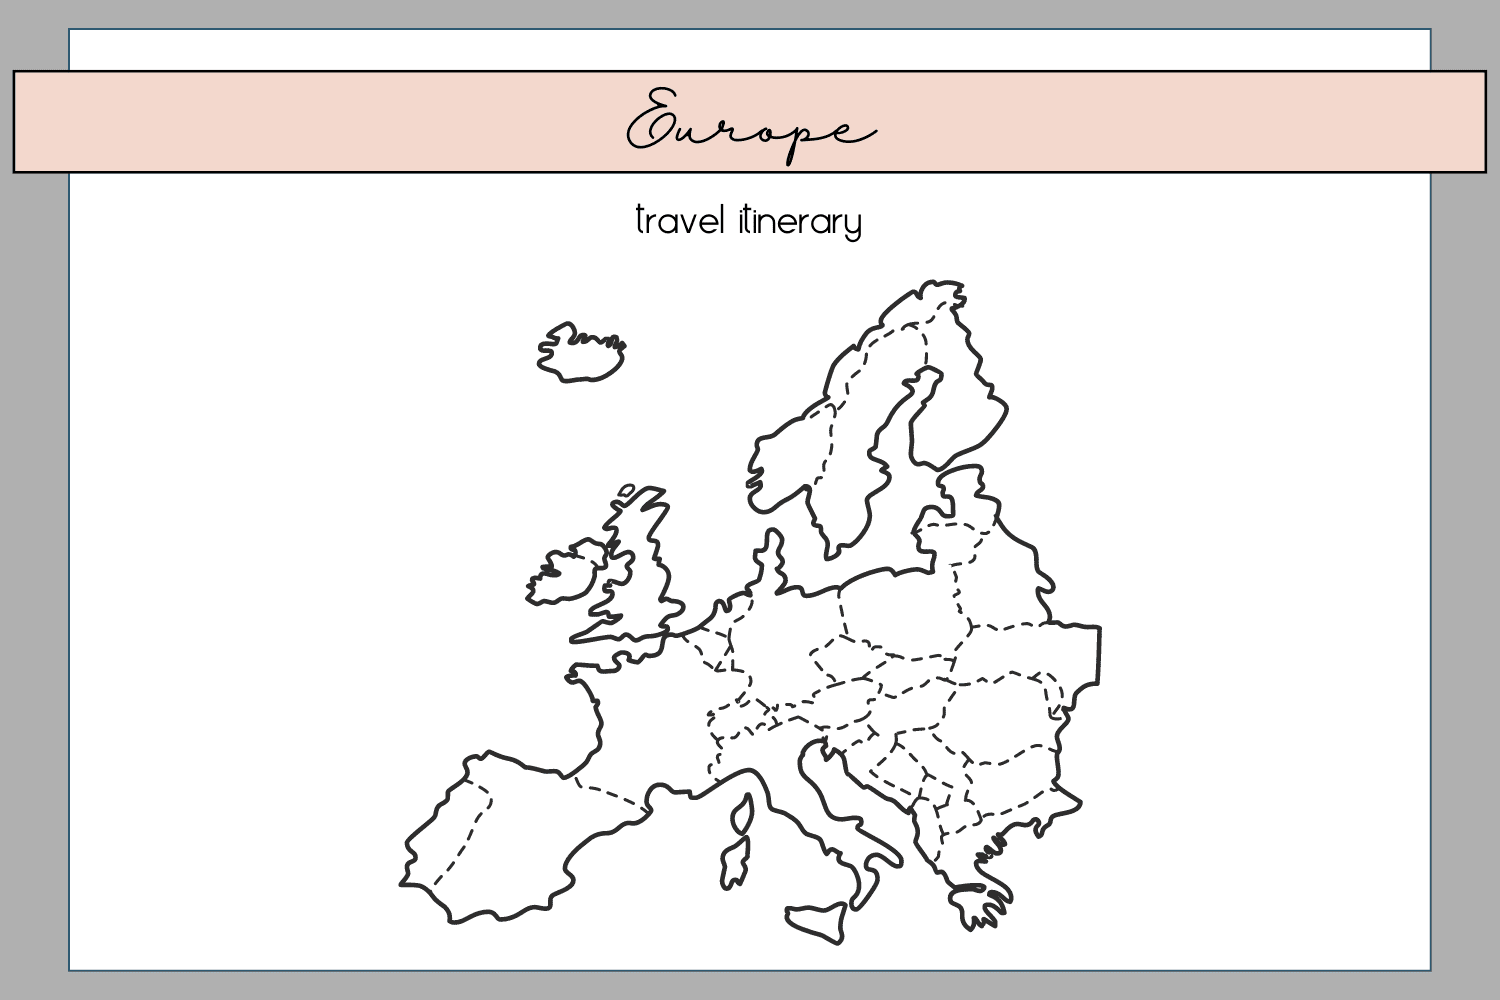 Europe travel itinerary